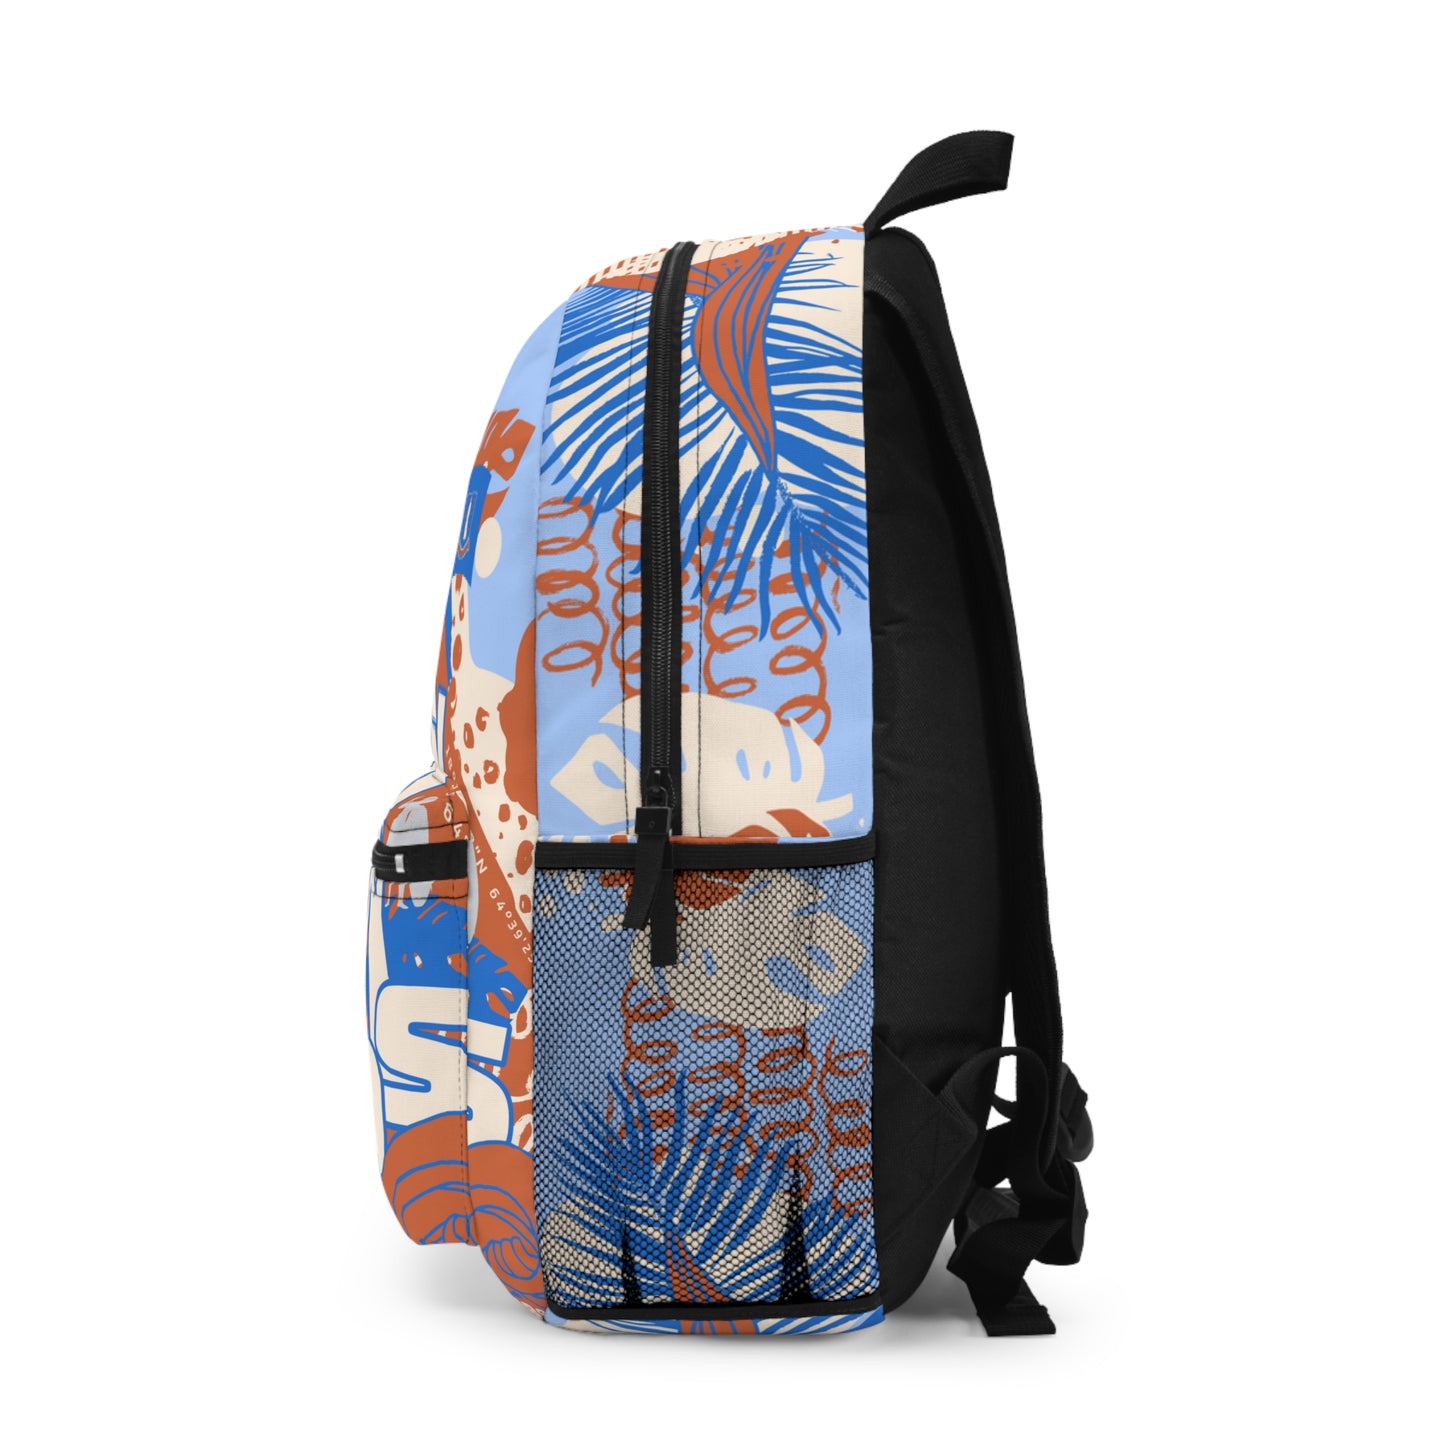 "BVI - For Island Life" (Crush) Backpack